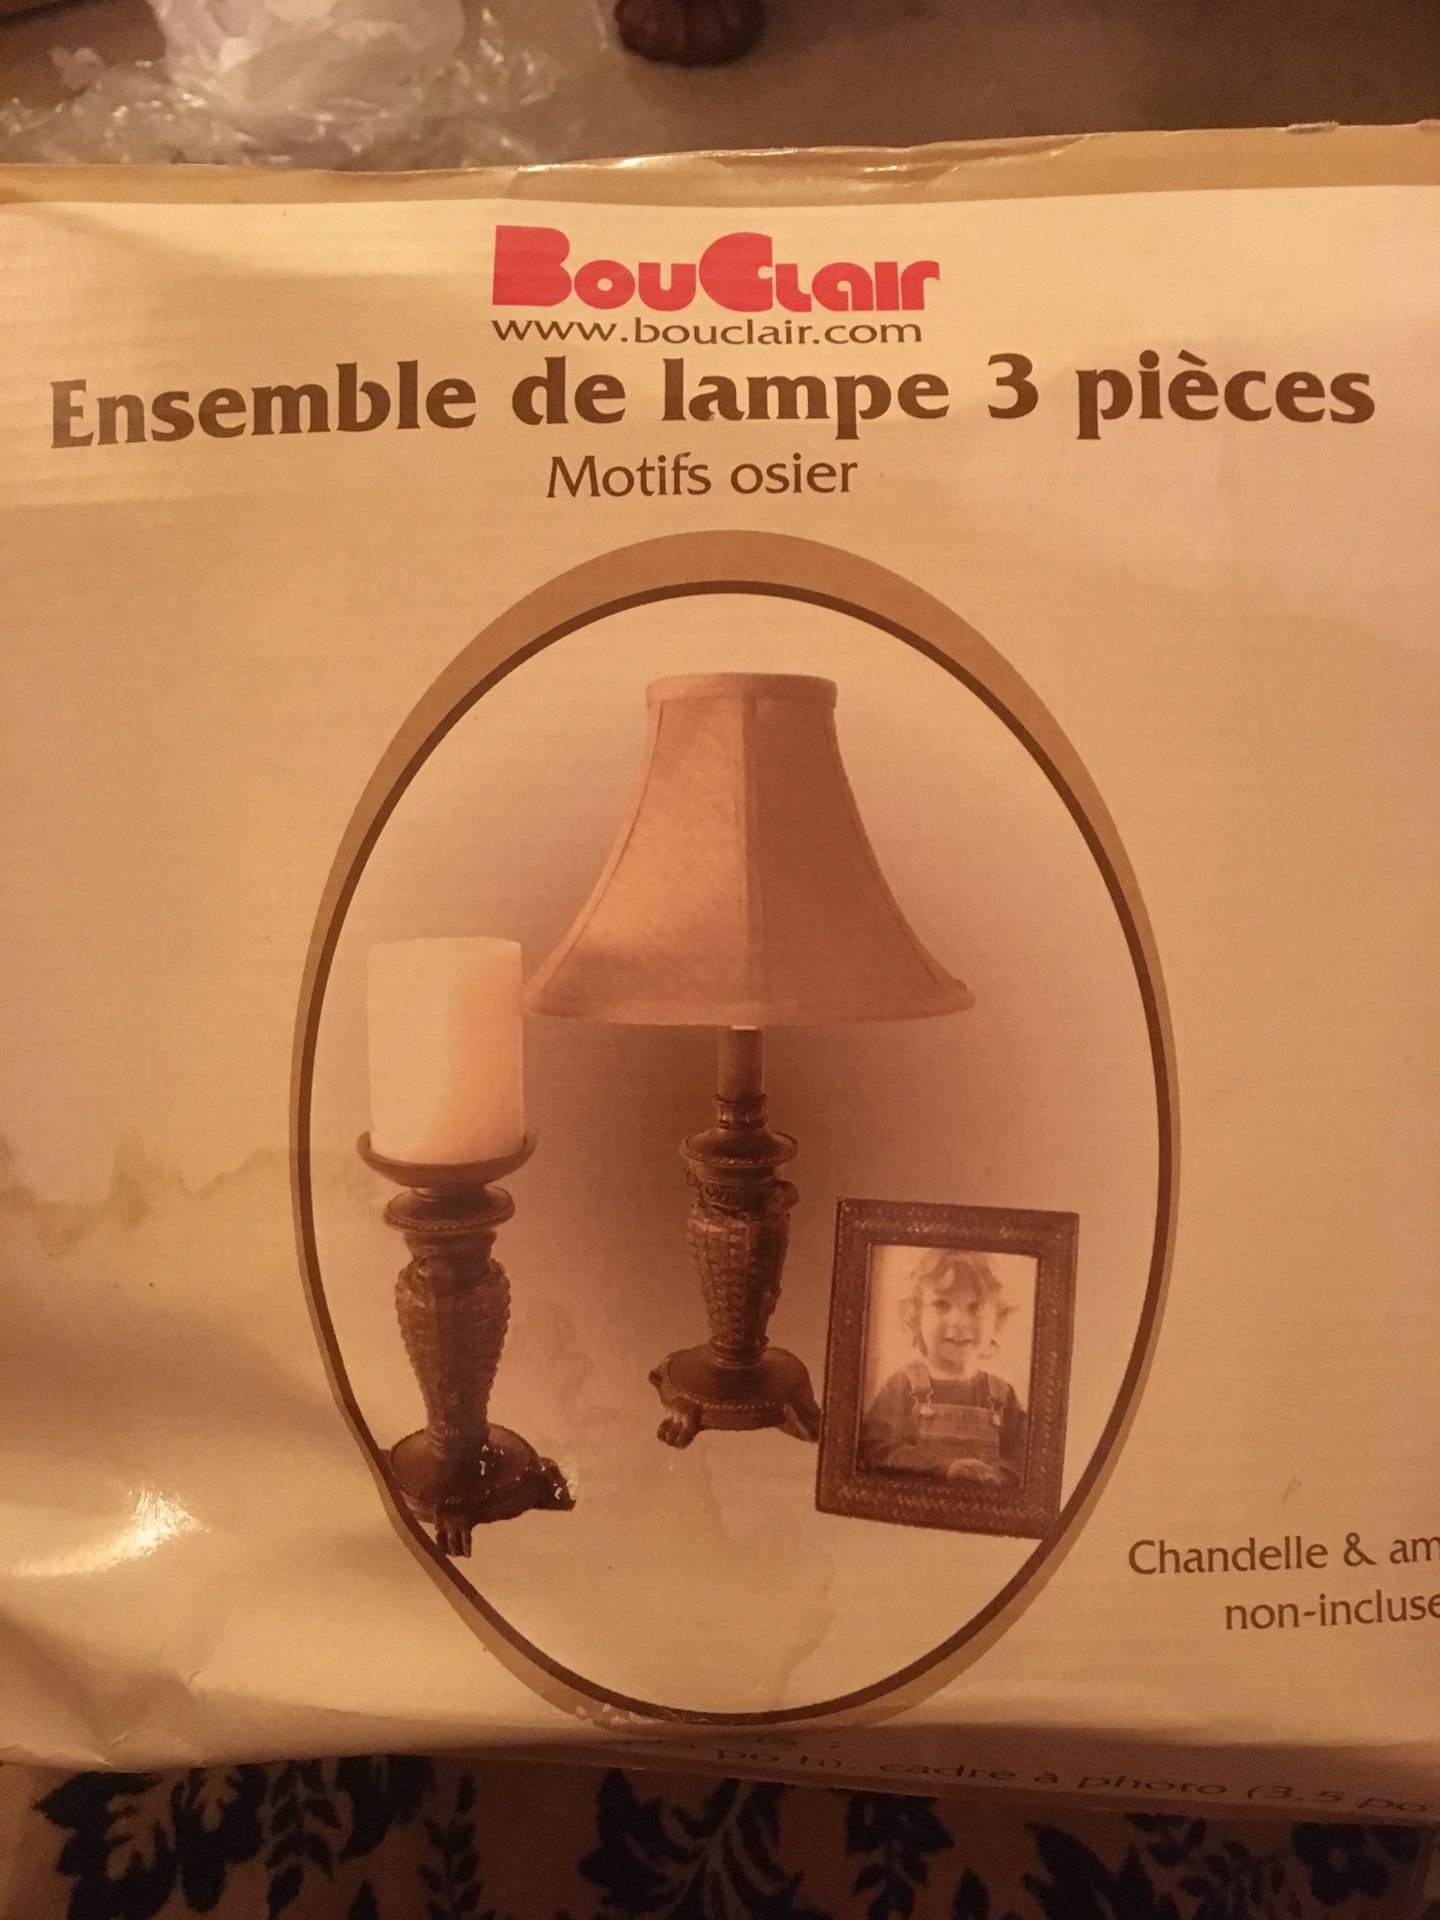 Lamp gift set